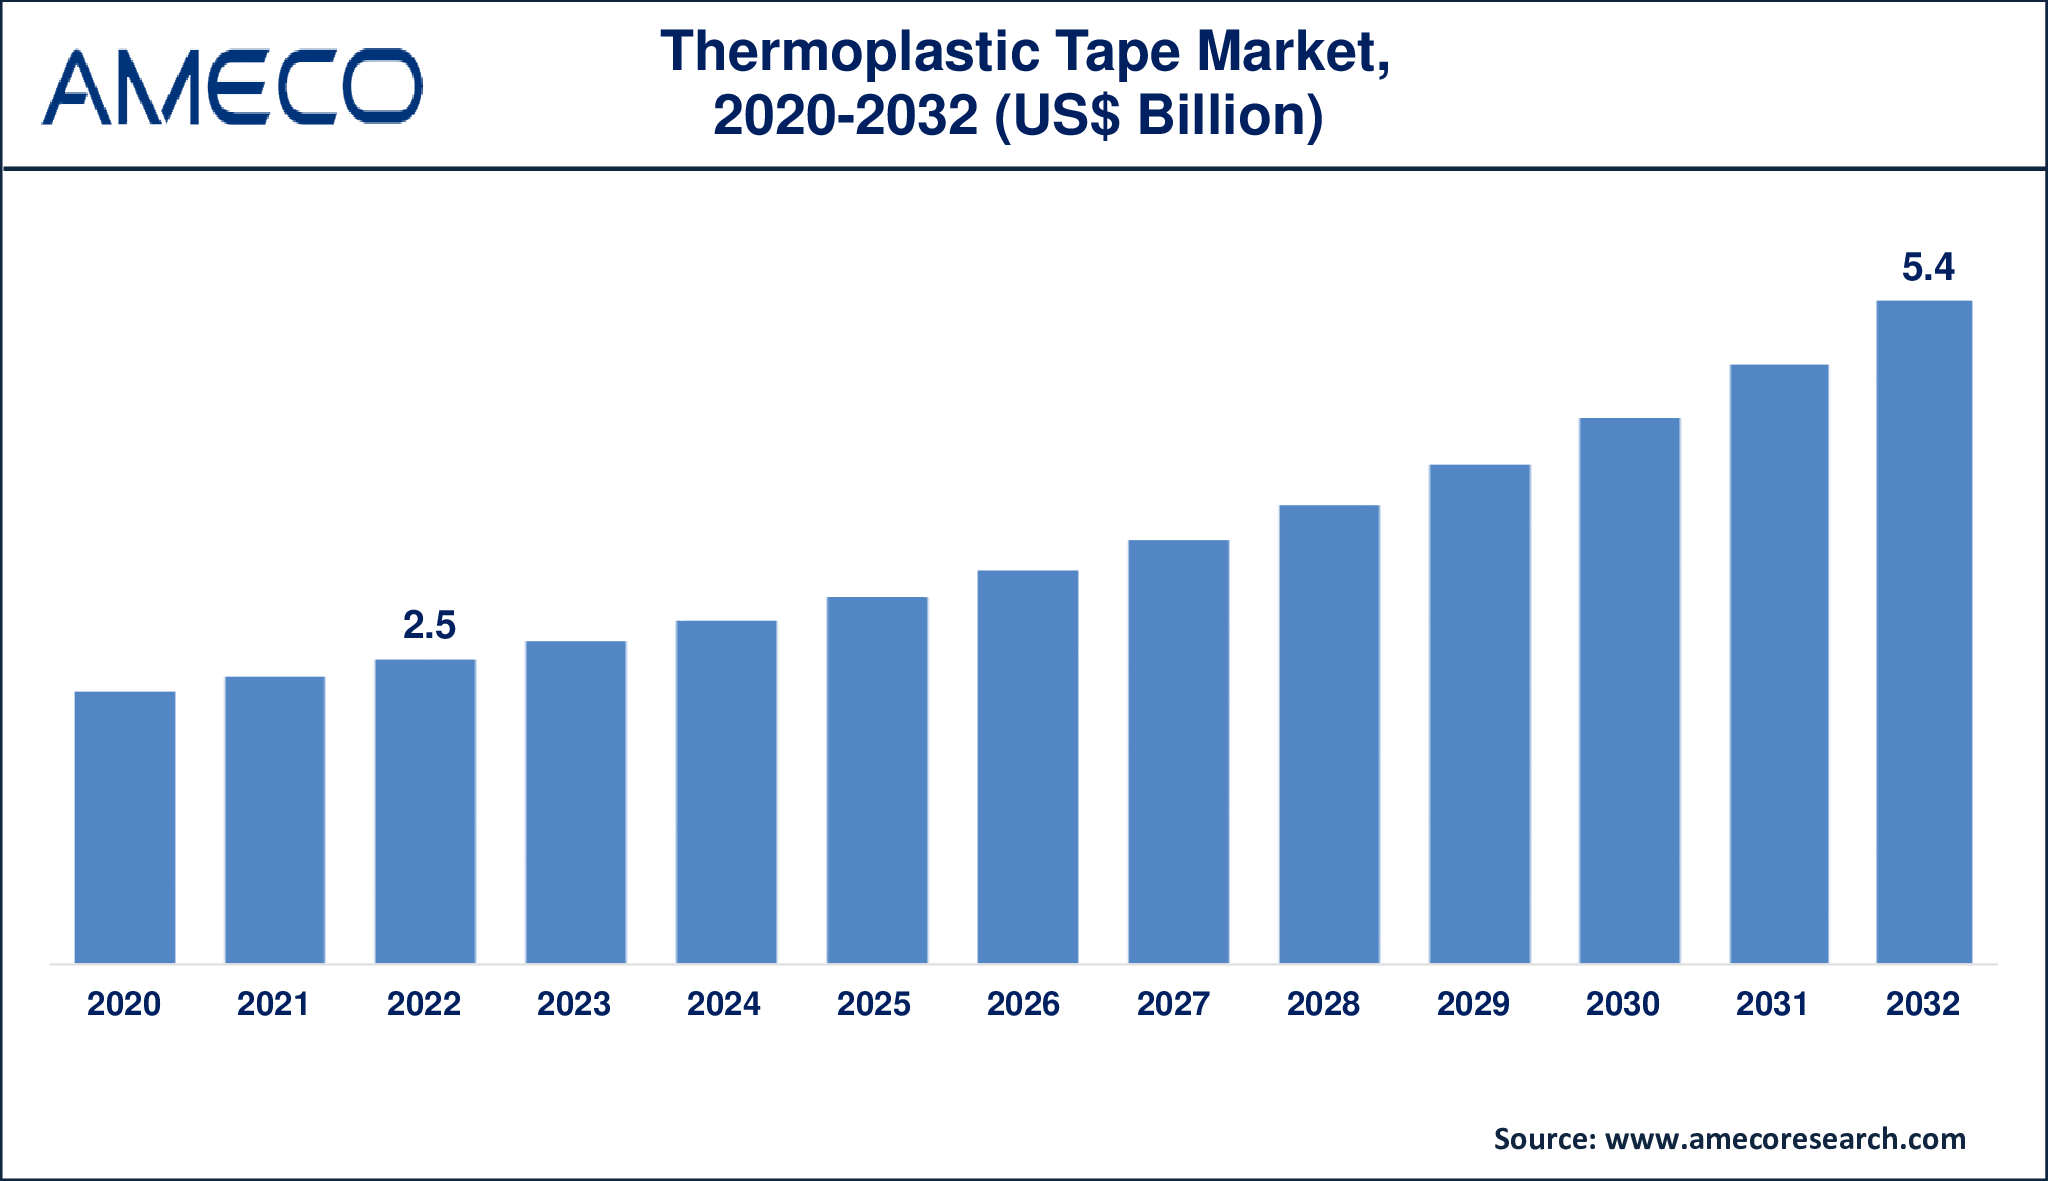 Thermoplastic Tape Market Dynamics